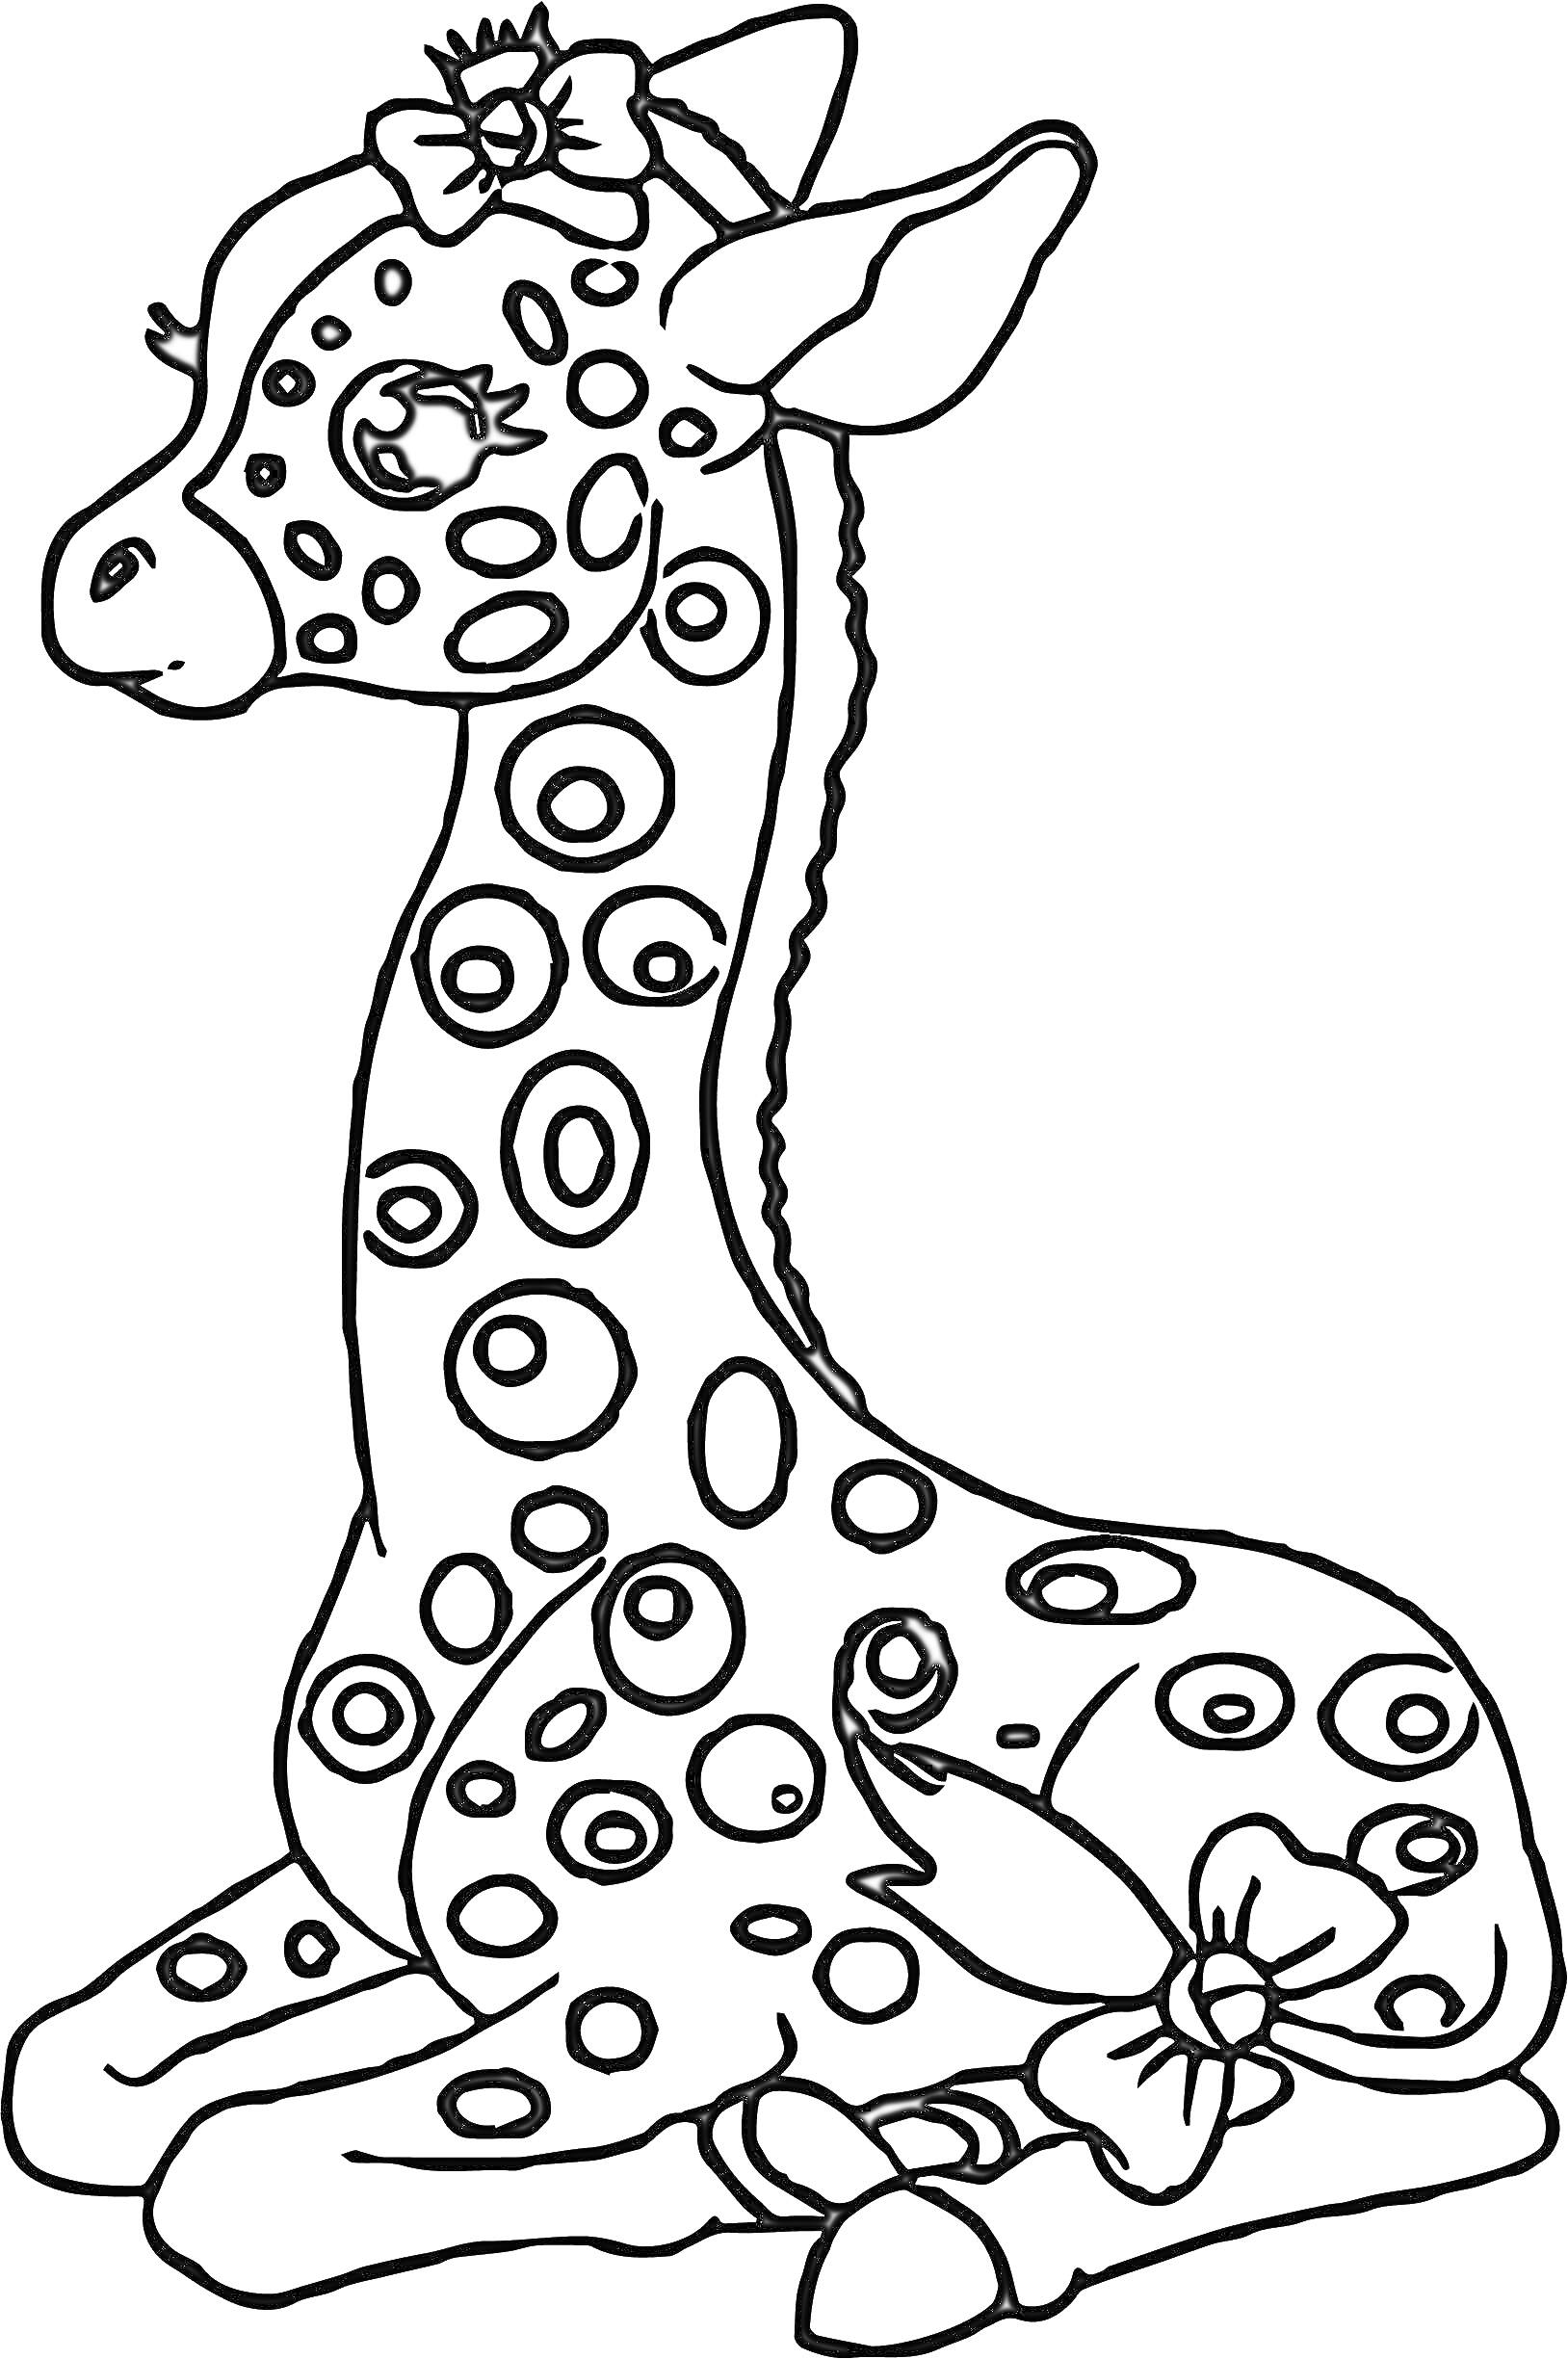 Раскраска Маленький жираф с большими глазами, сидящий и украшенный бантами